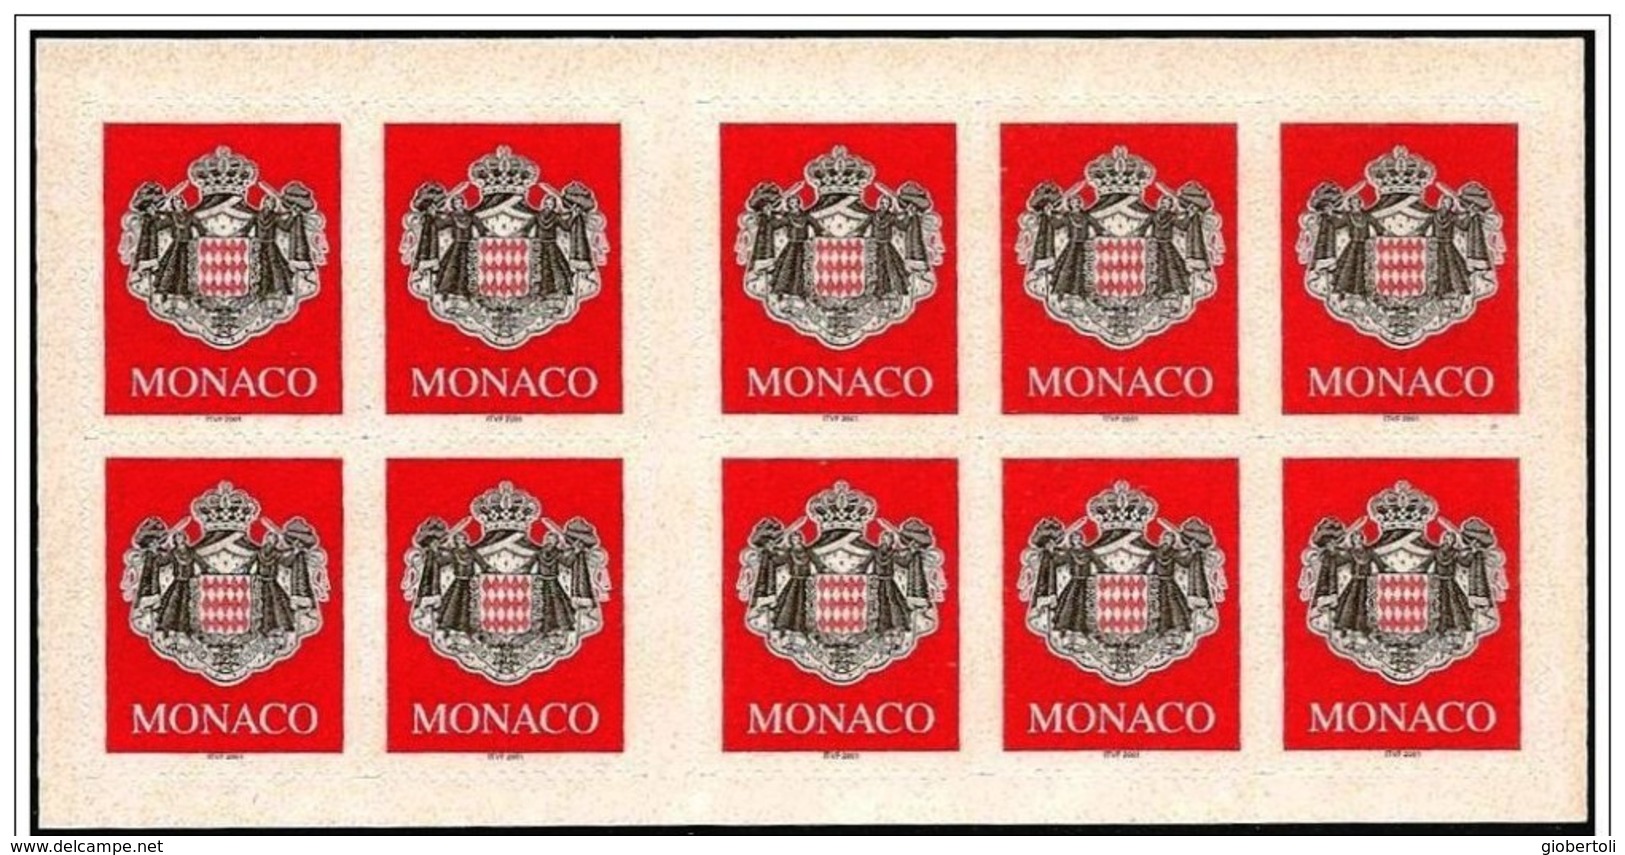 Monaco: Stemma, Armoiries, Coat Of Arms, Foglietto, Block, Bloc, Libretto, Carnet - Briefmarken